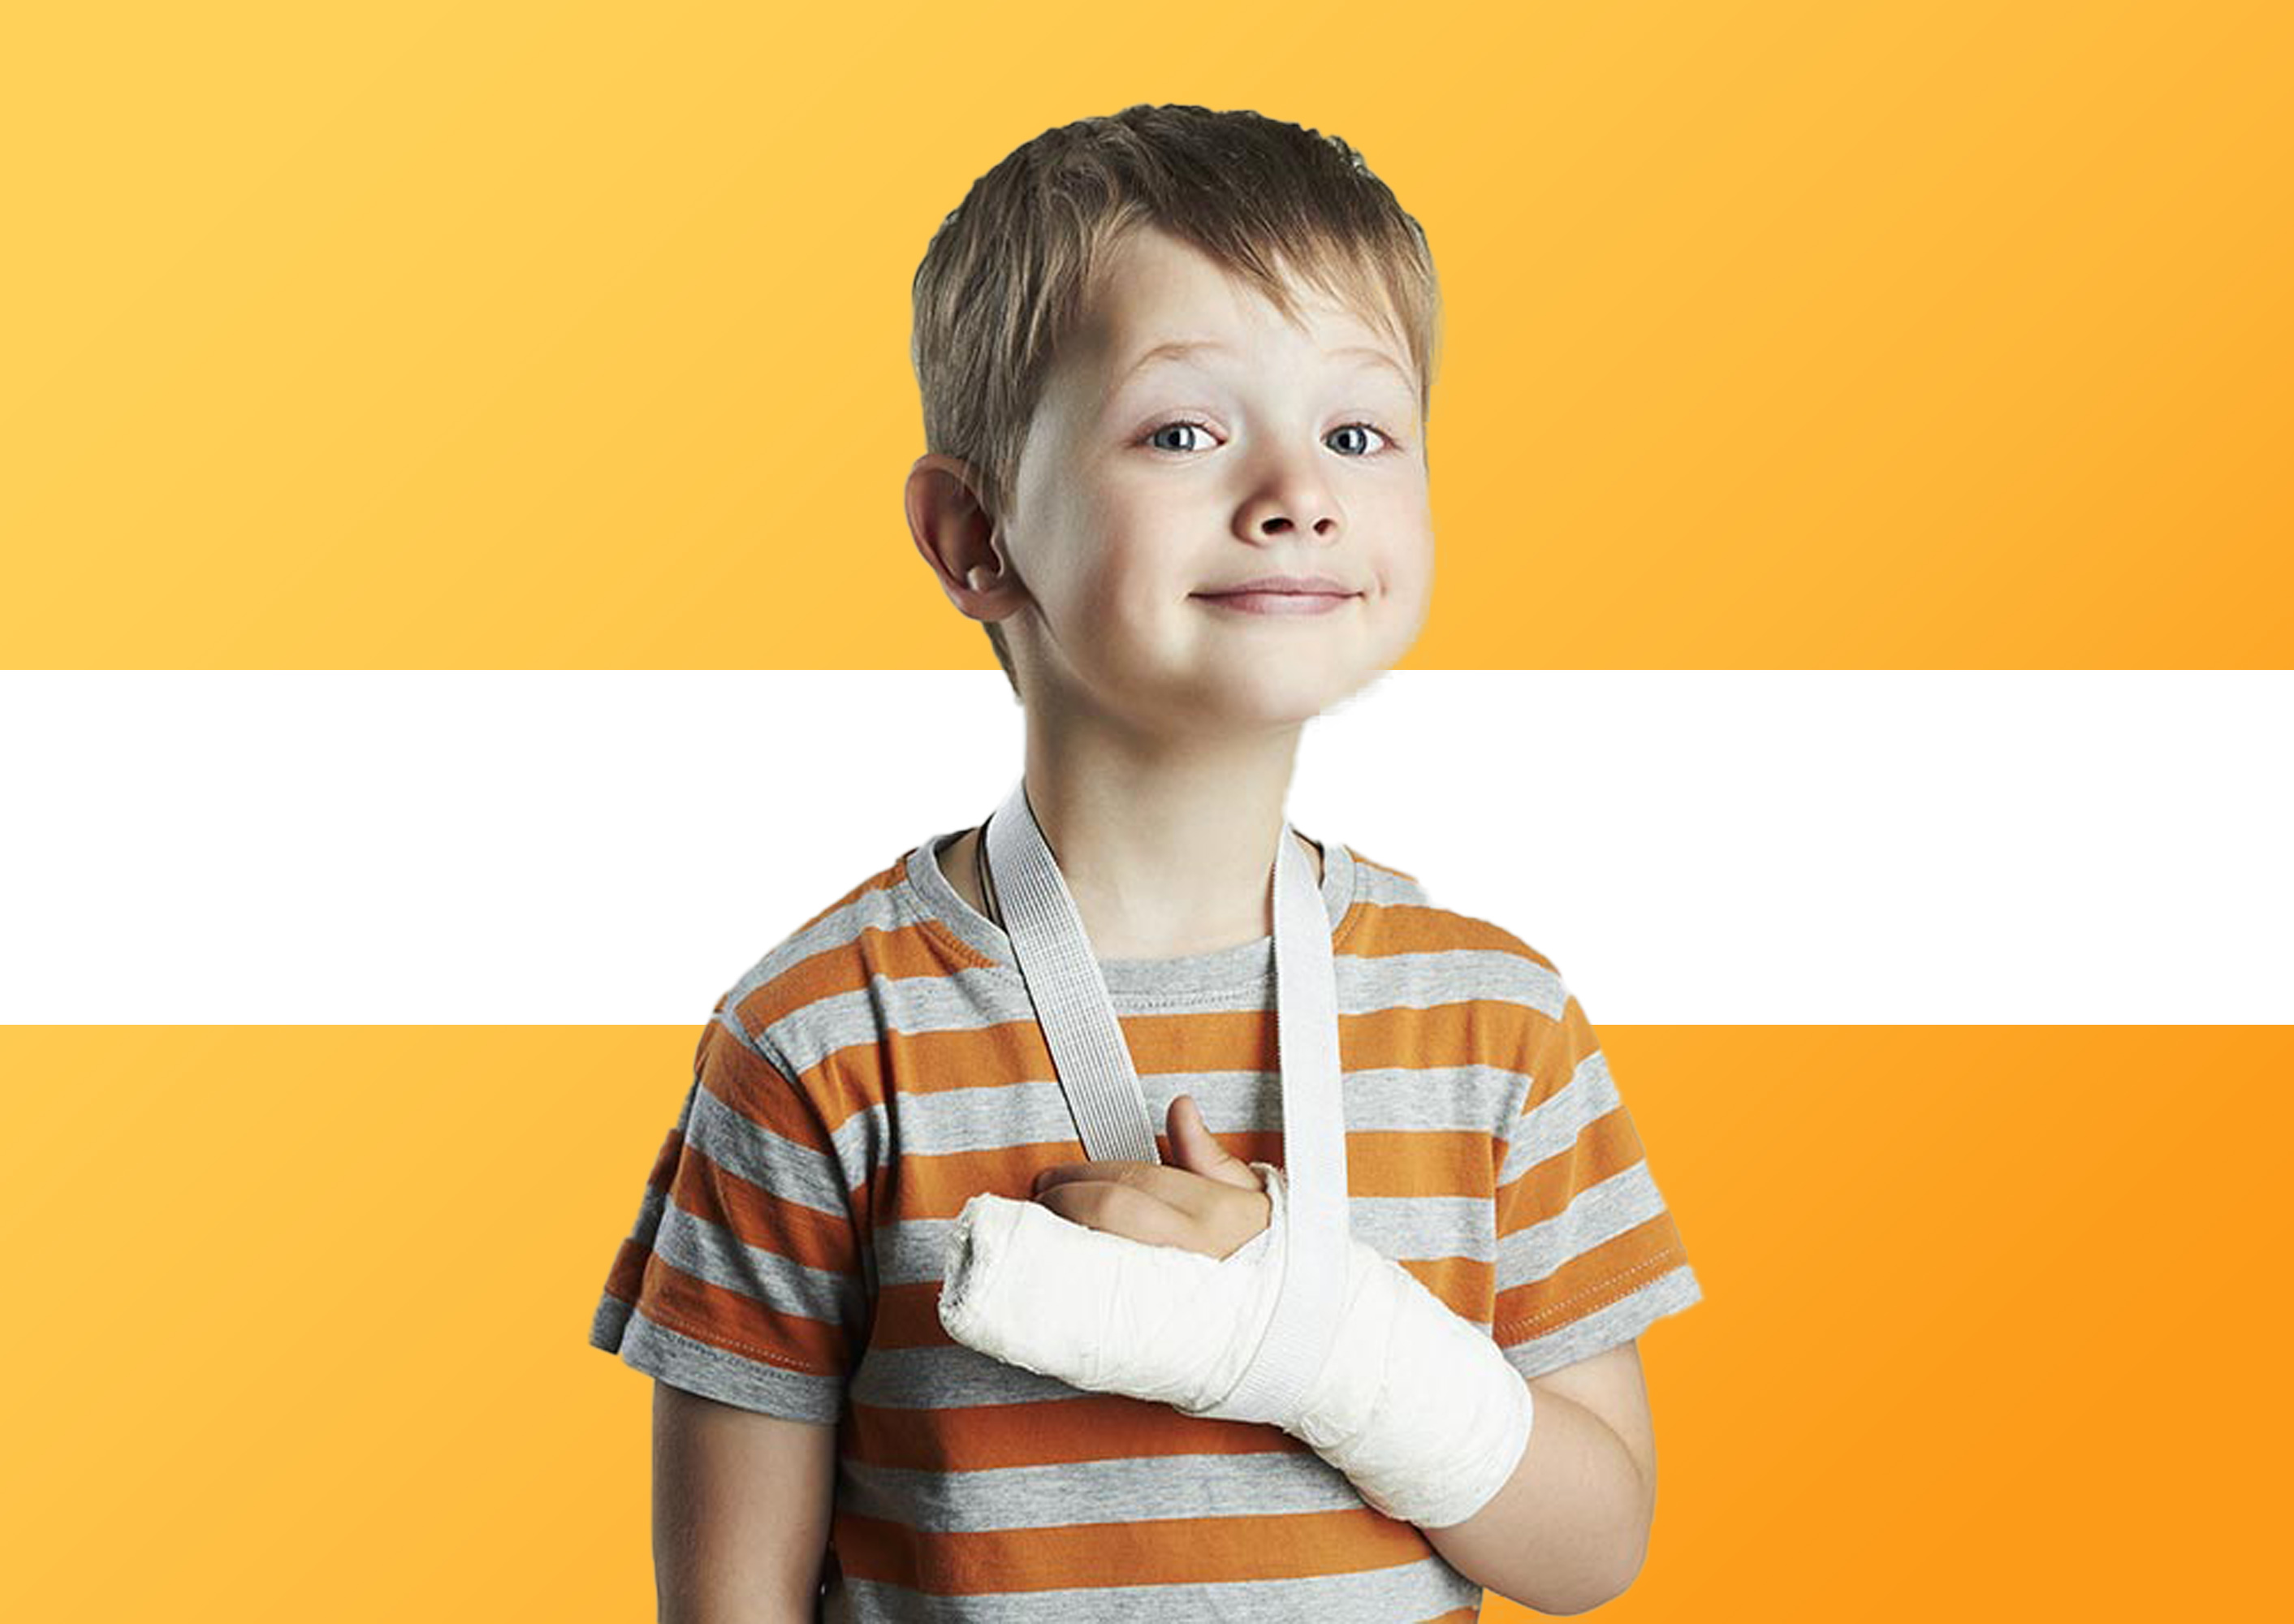 Accident insurance for children